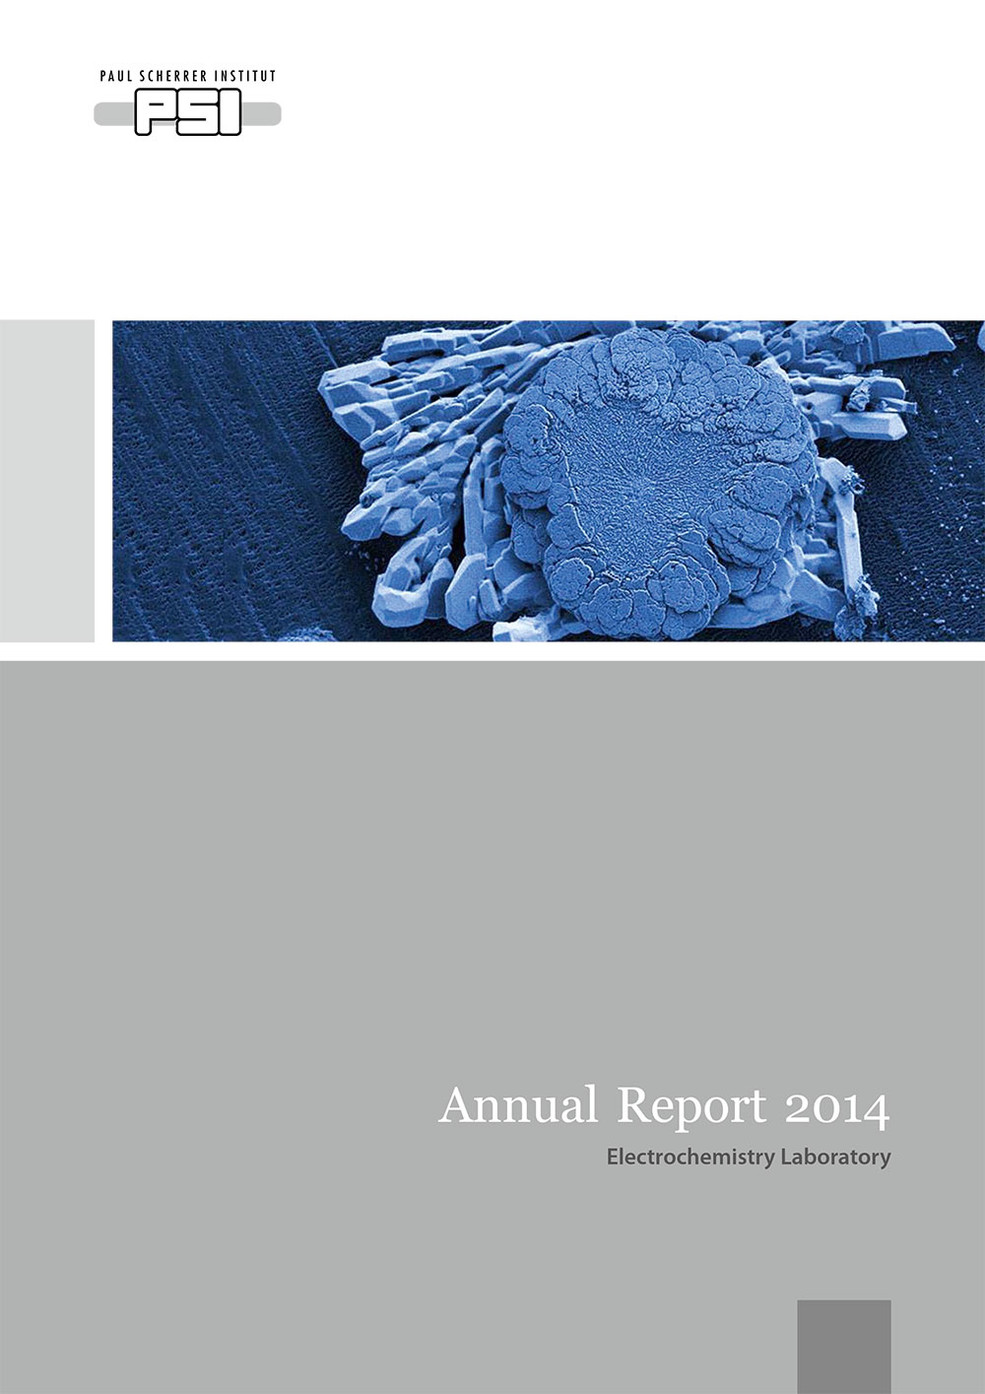 LEC annual report 2014